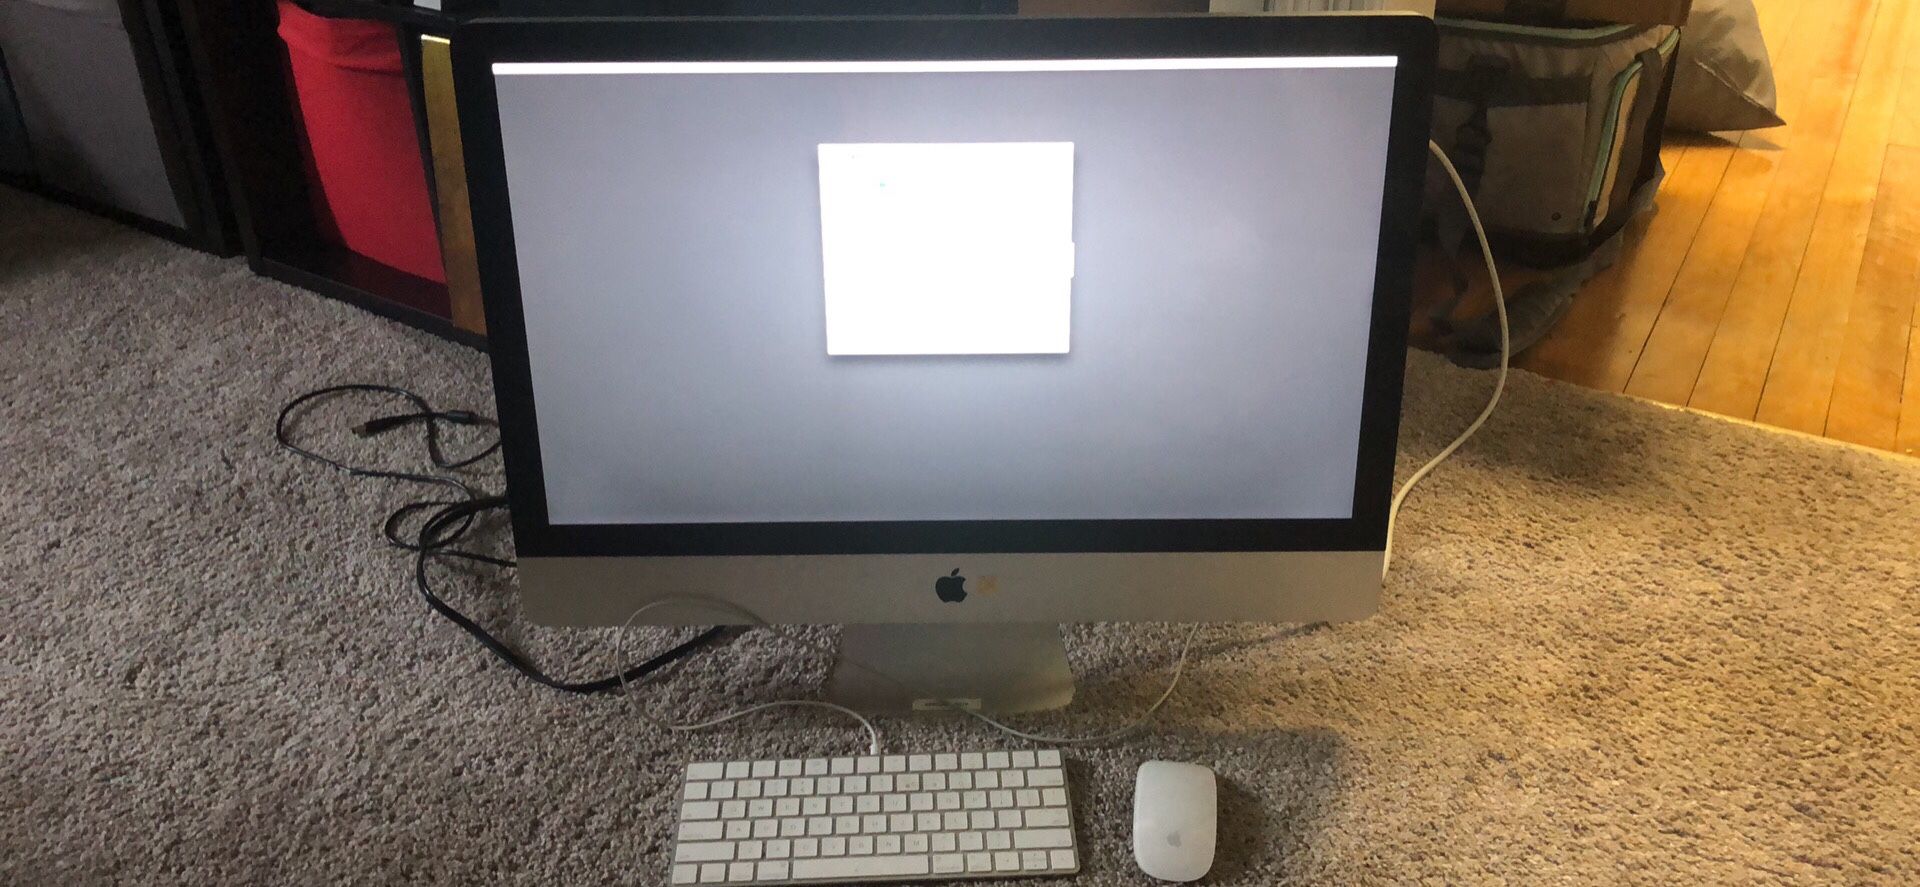 Apple iMac Mid 2011 27” As-is